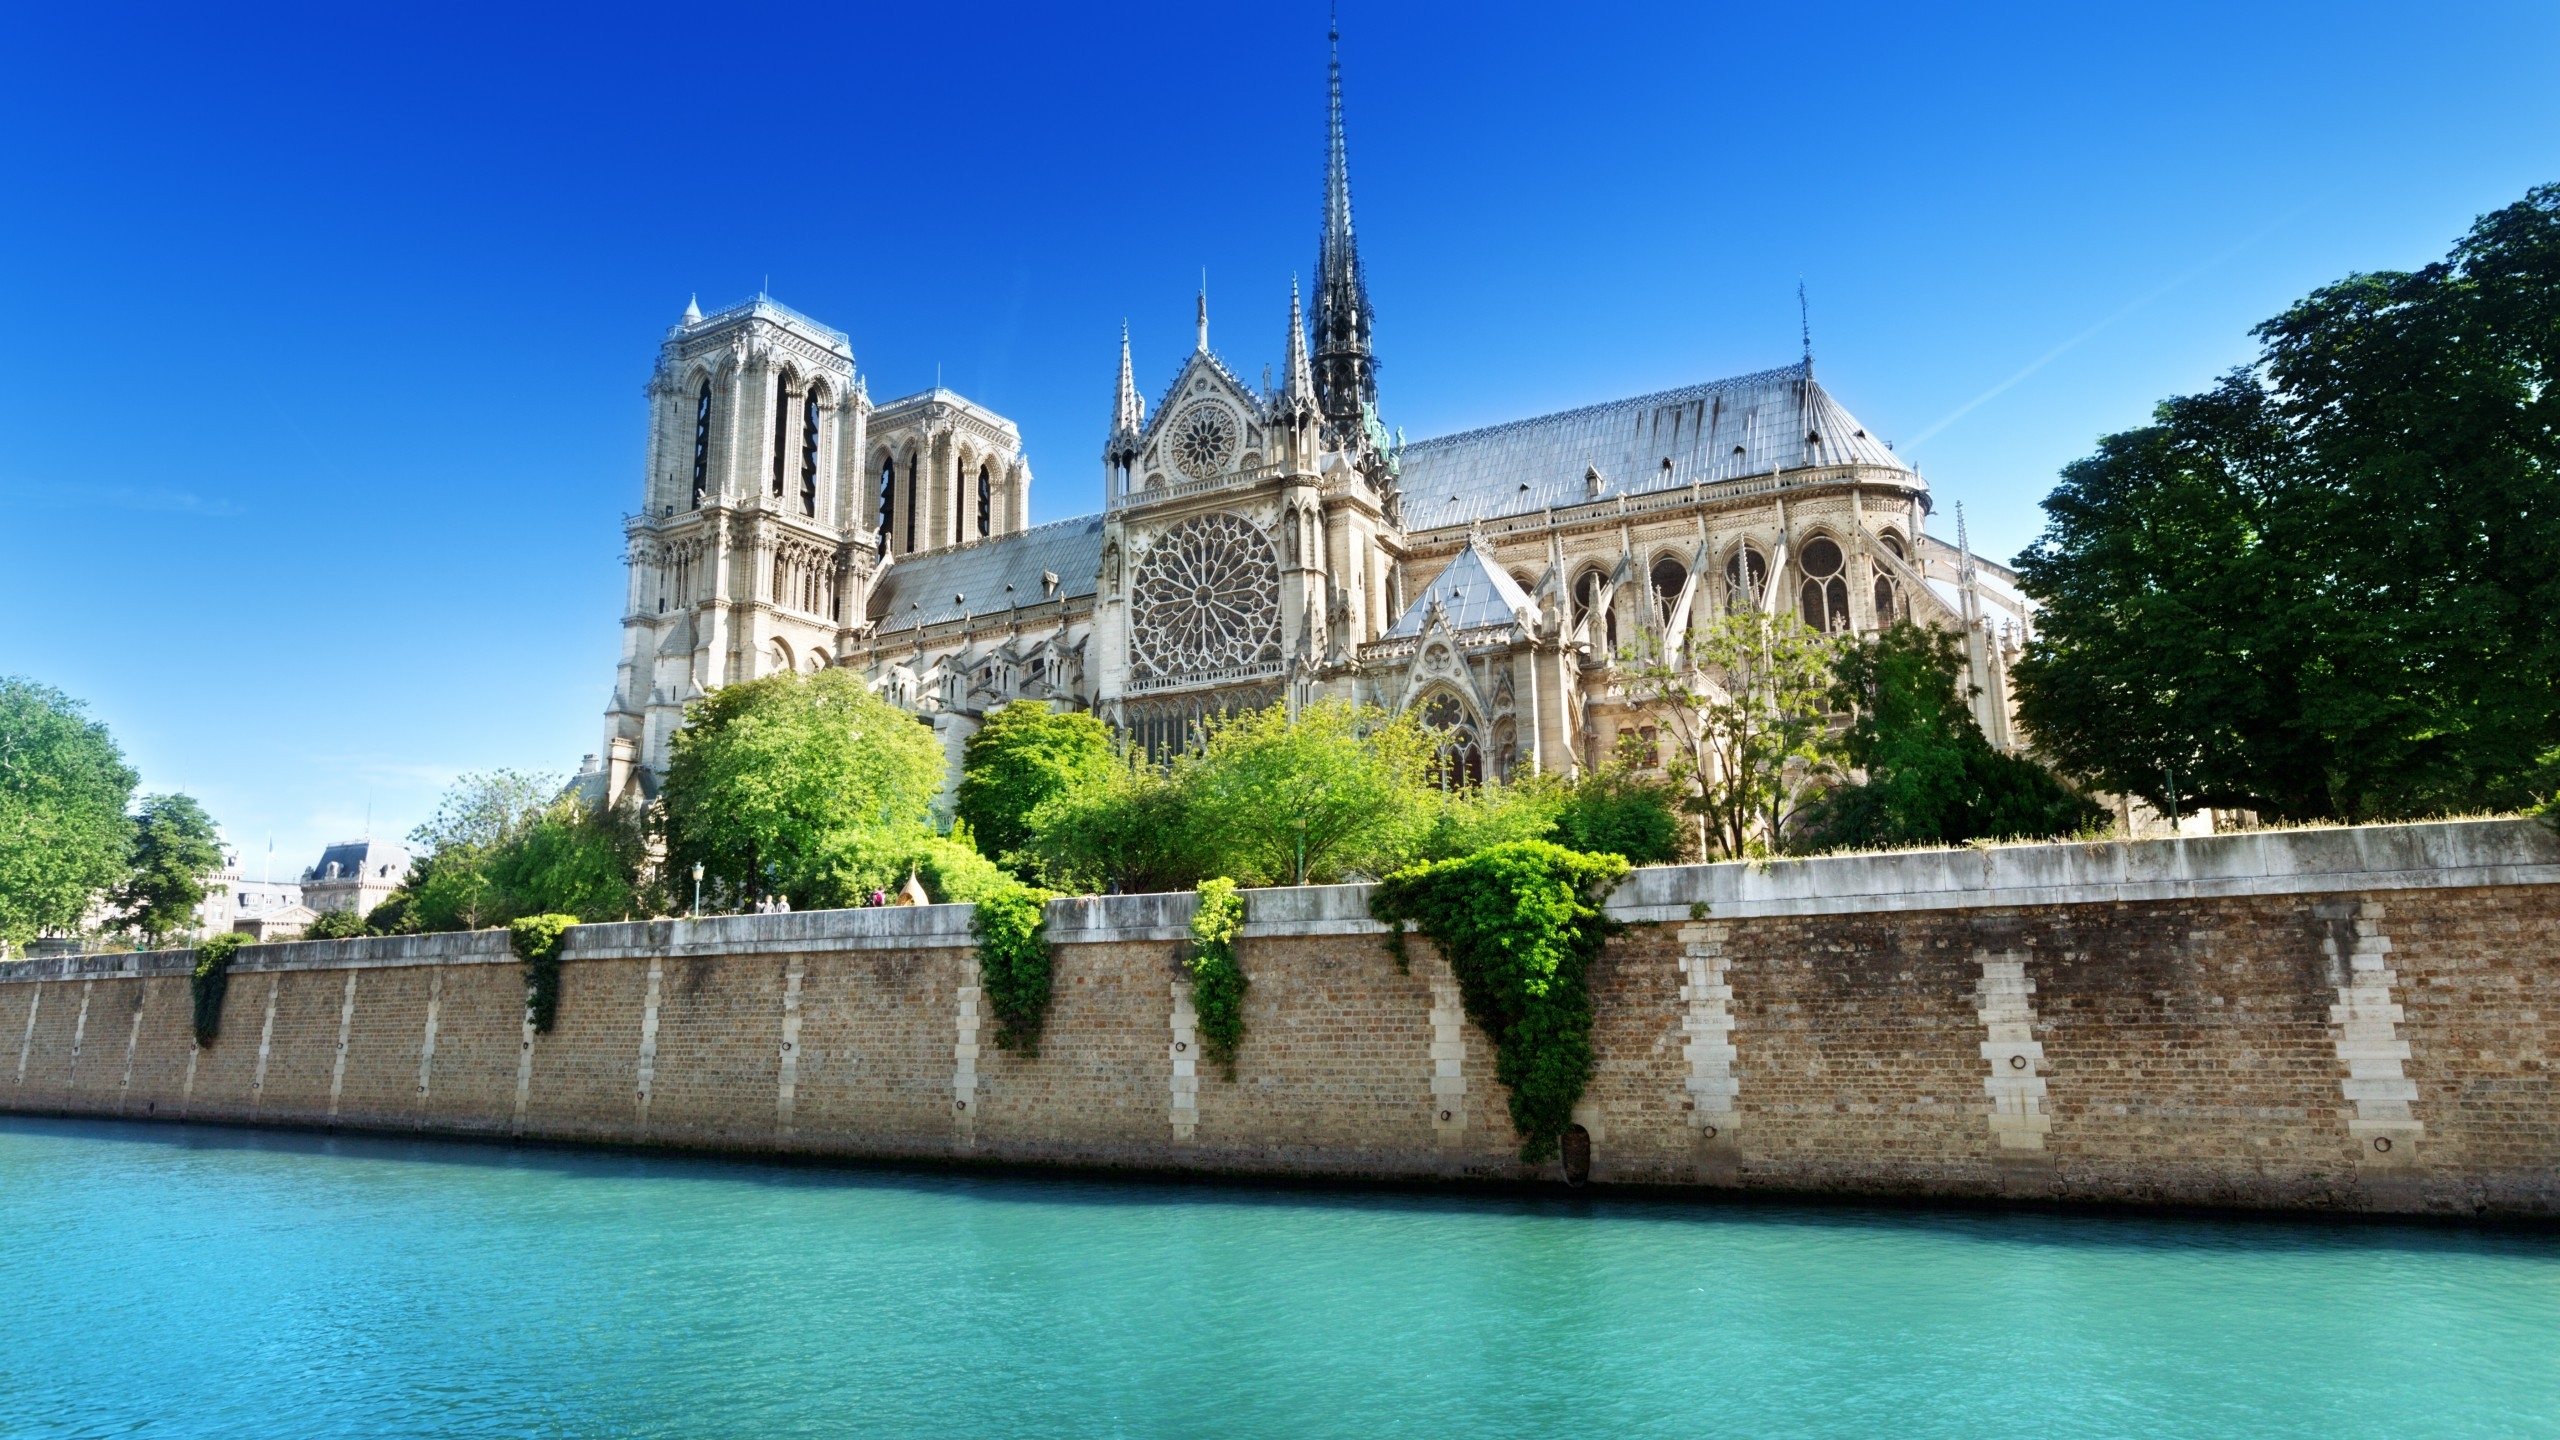 Notre Dame de Paris Side View for 2560x1440 HDTV resolution